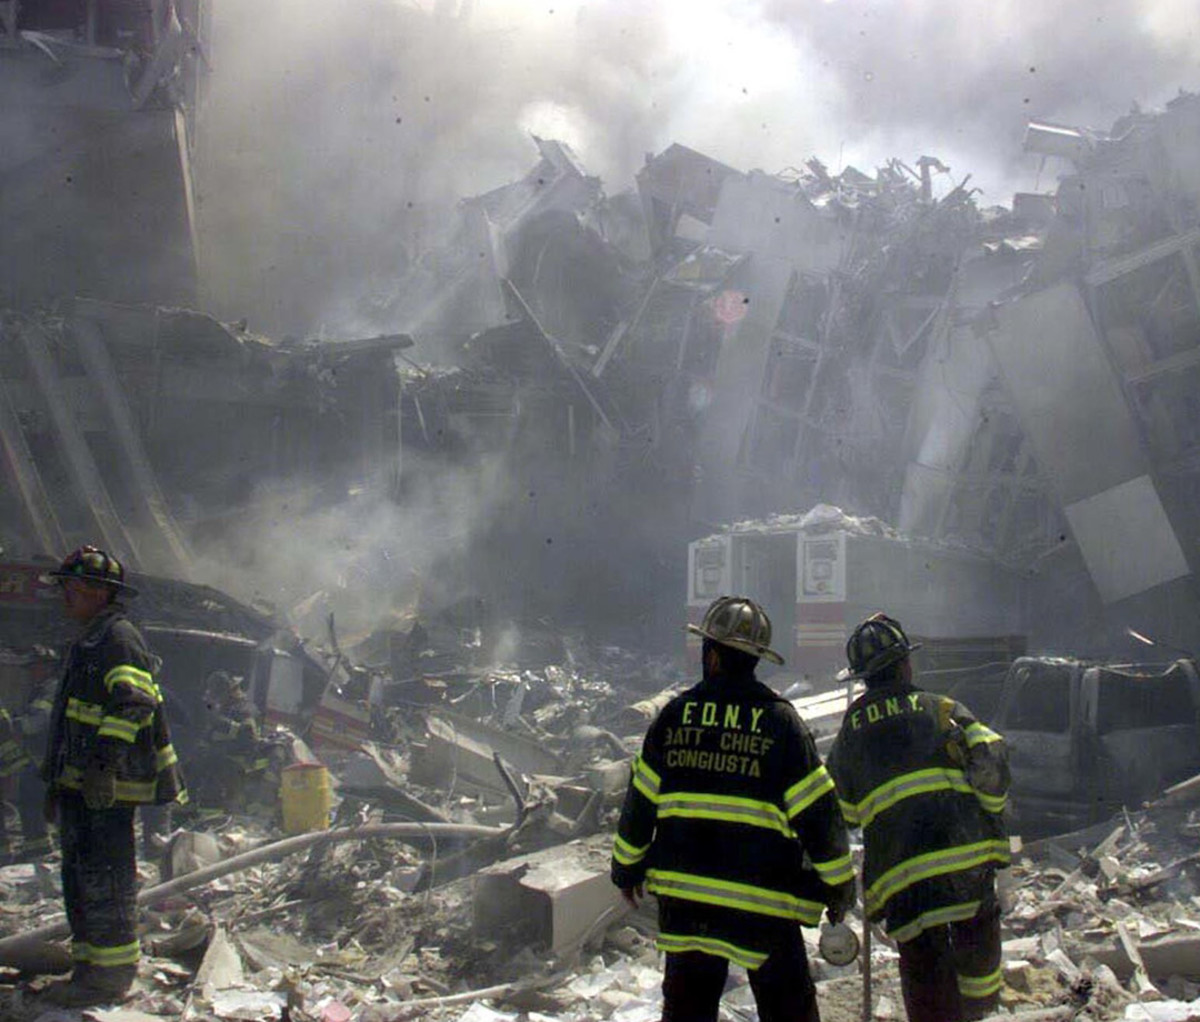 The site of the World Trade Center terrorist attacks